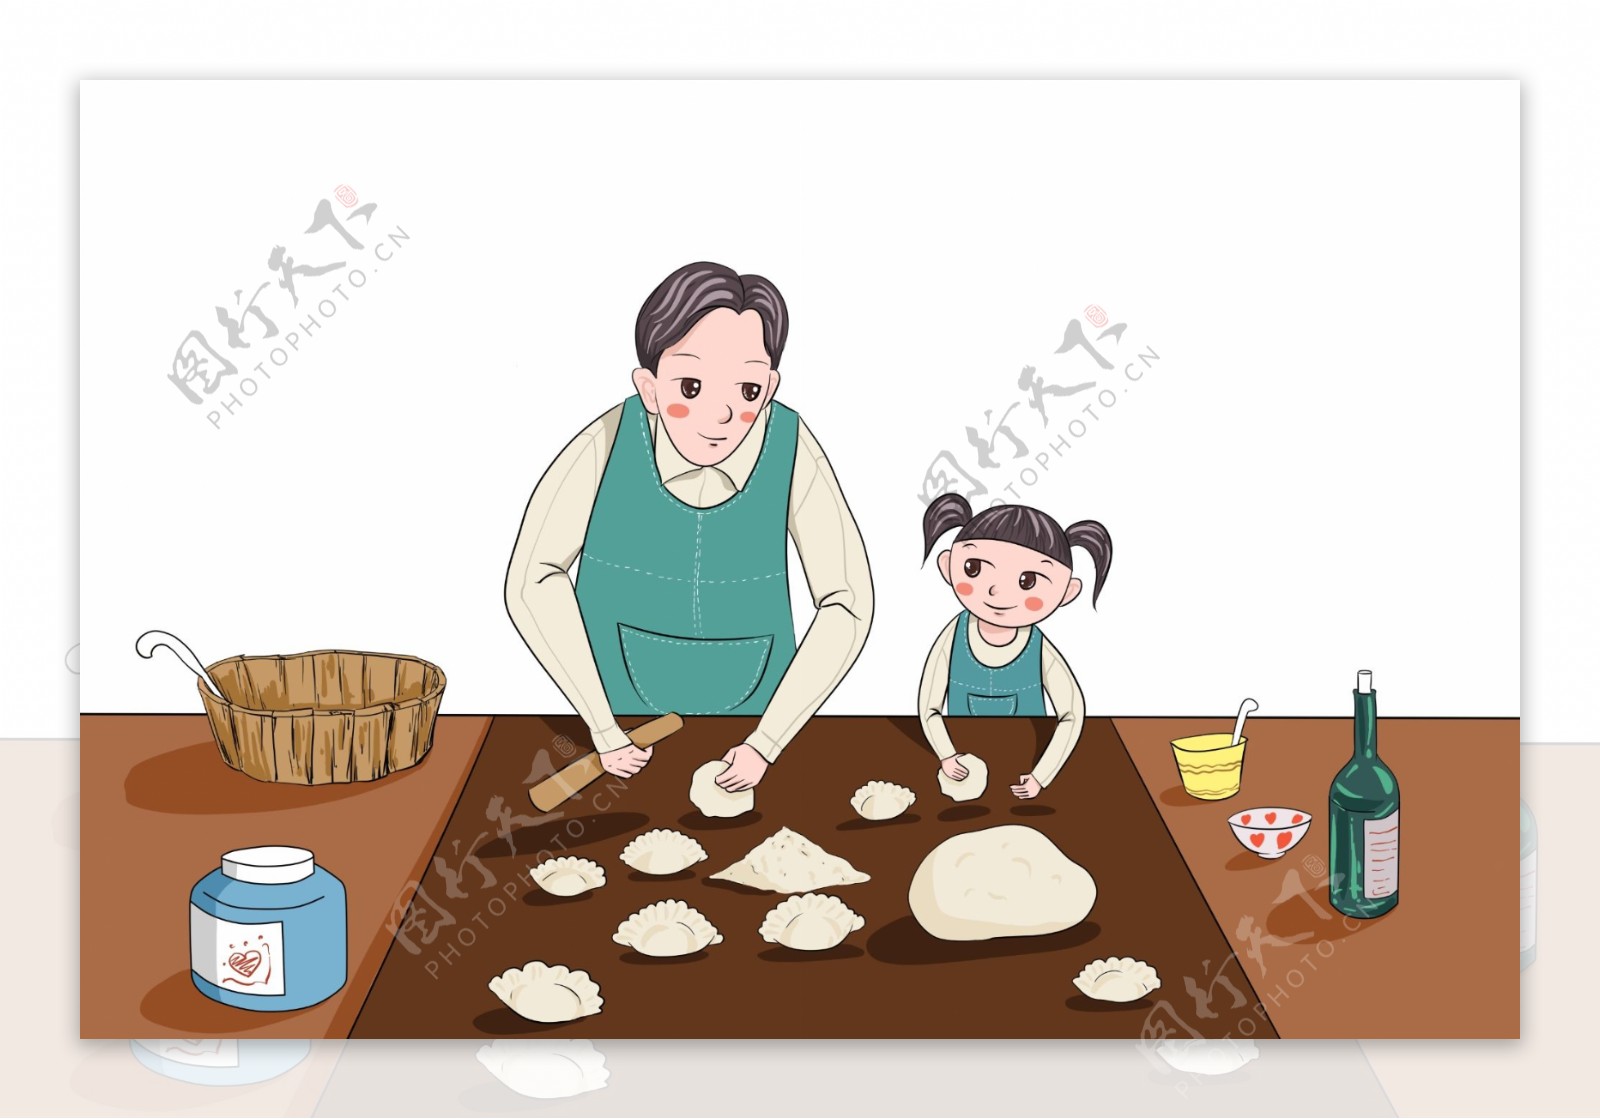 卡通手绘插画妇女包饺子